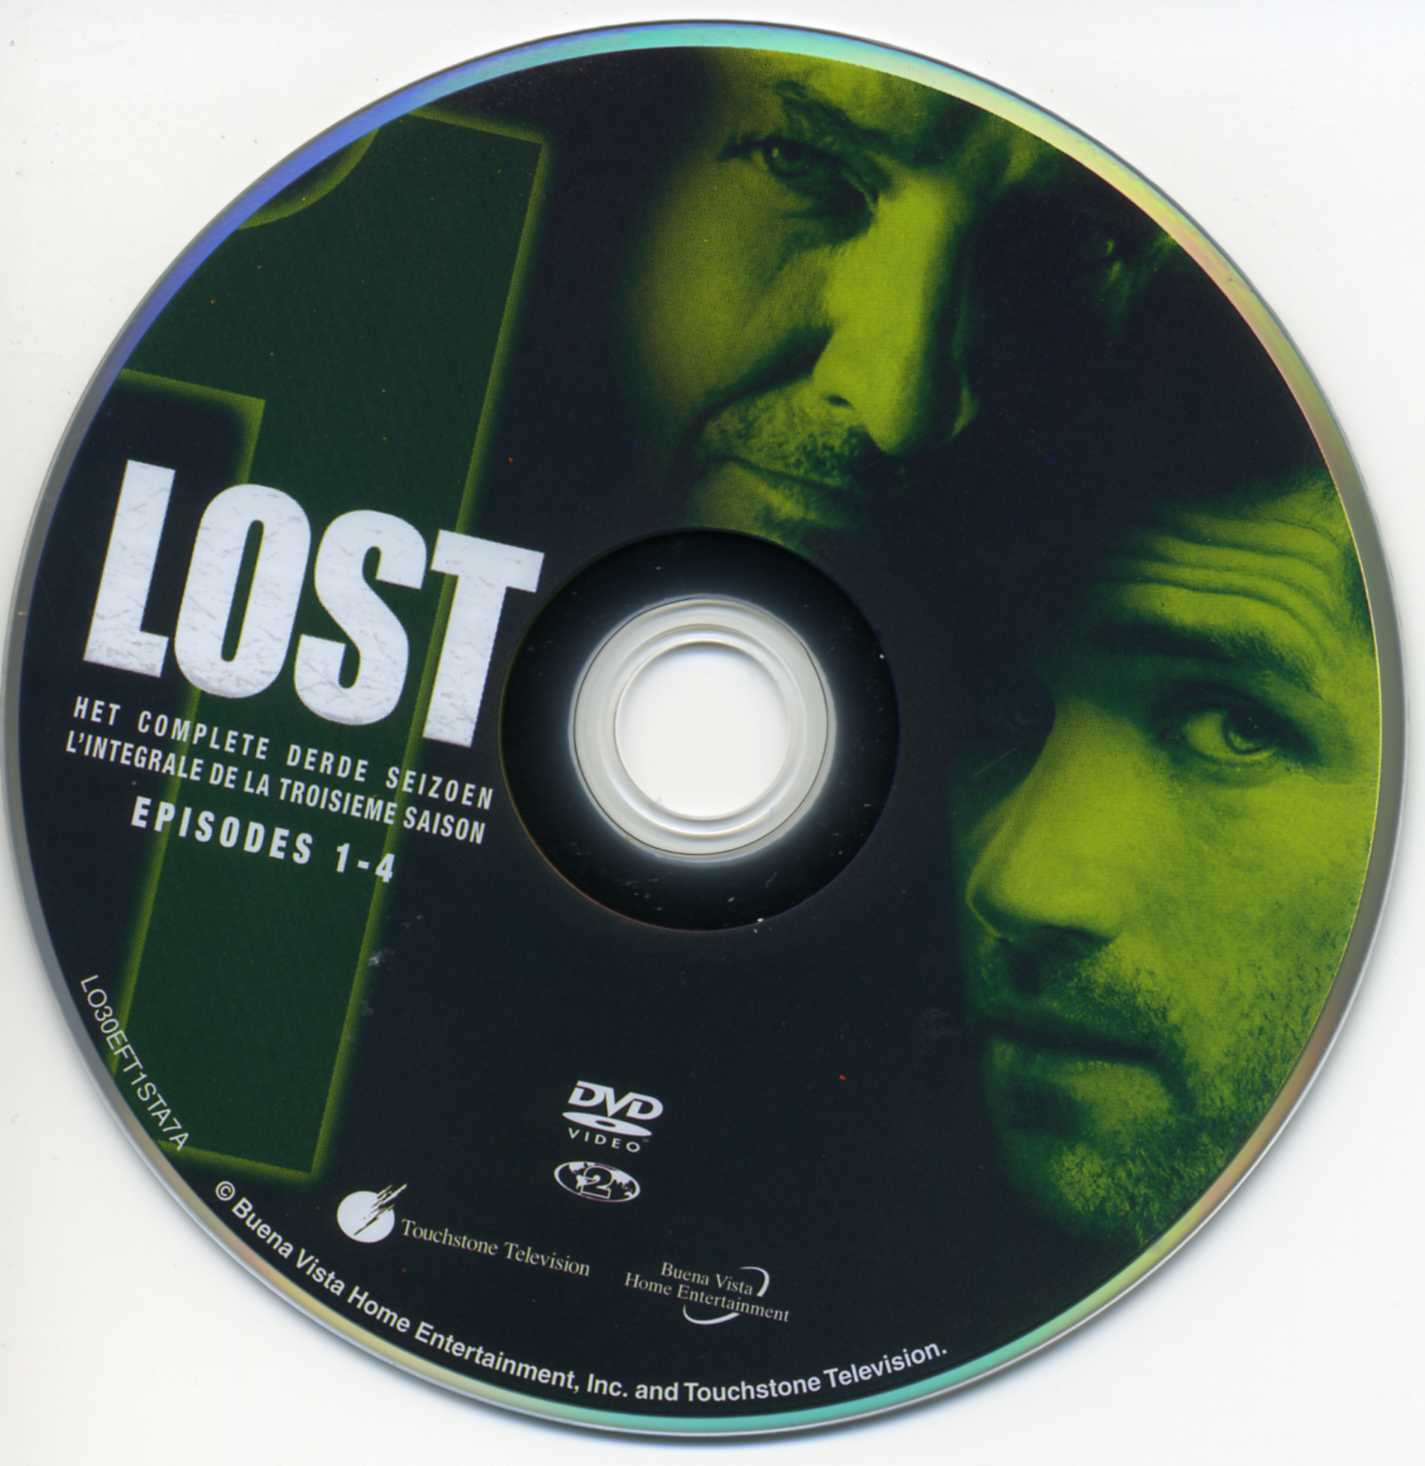 Lost Saison 3 DVD 1